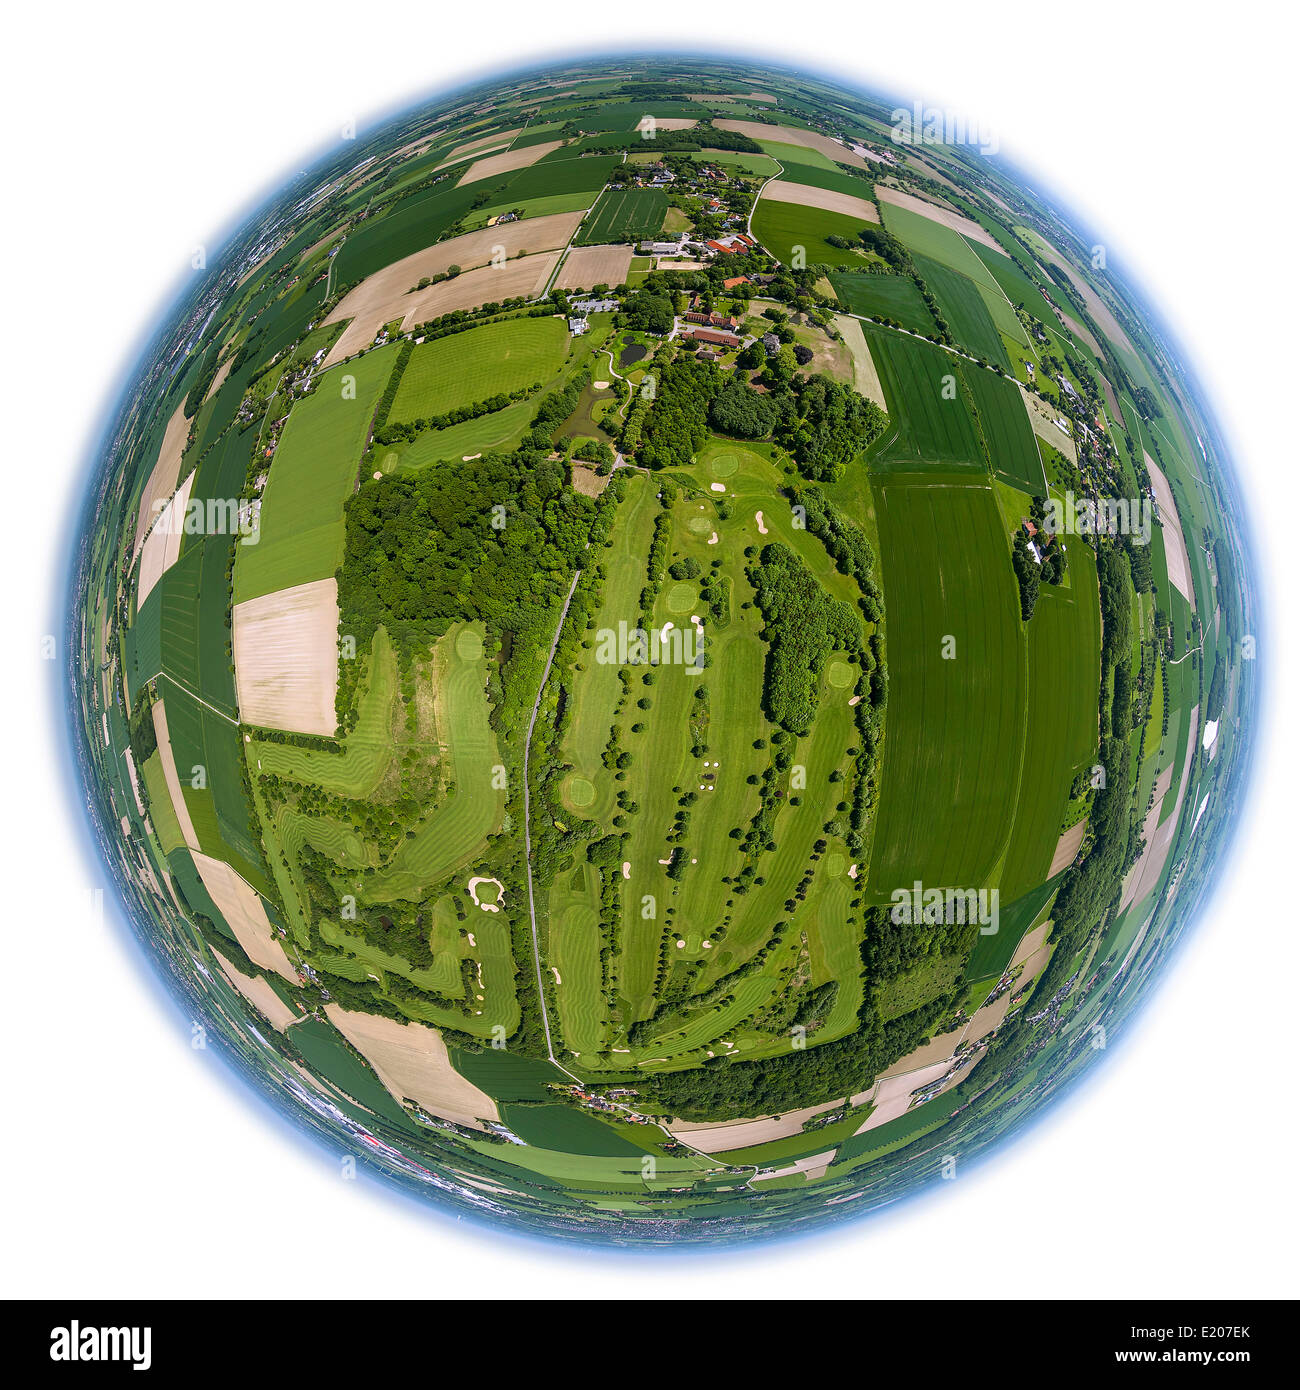 Vista aerea, fisheye, Campo da Golf Hamm, Golfclub Hamm Drechen, Hamm, distretto della Ruhr, Nord Reno-Westfalia, Germania Foto Stock